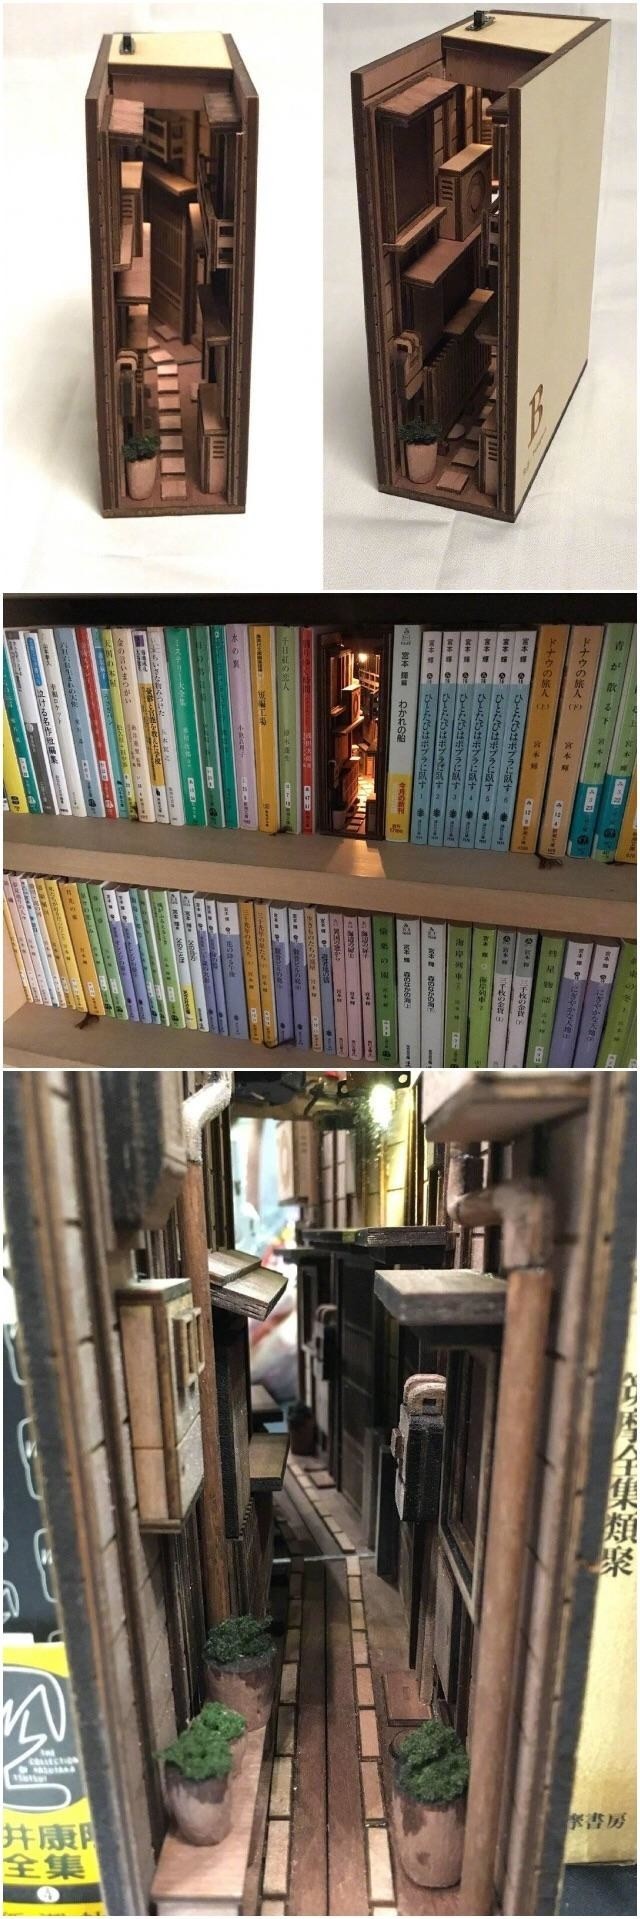 Parmi les volumes infinis de votre collection de manga japonais, vous pourriez inclure une "étagère" en plus représentant une rue dans une ville orientale surpeuplée.